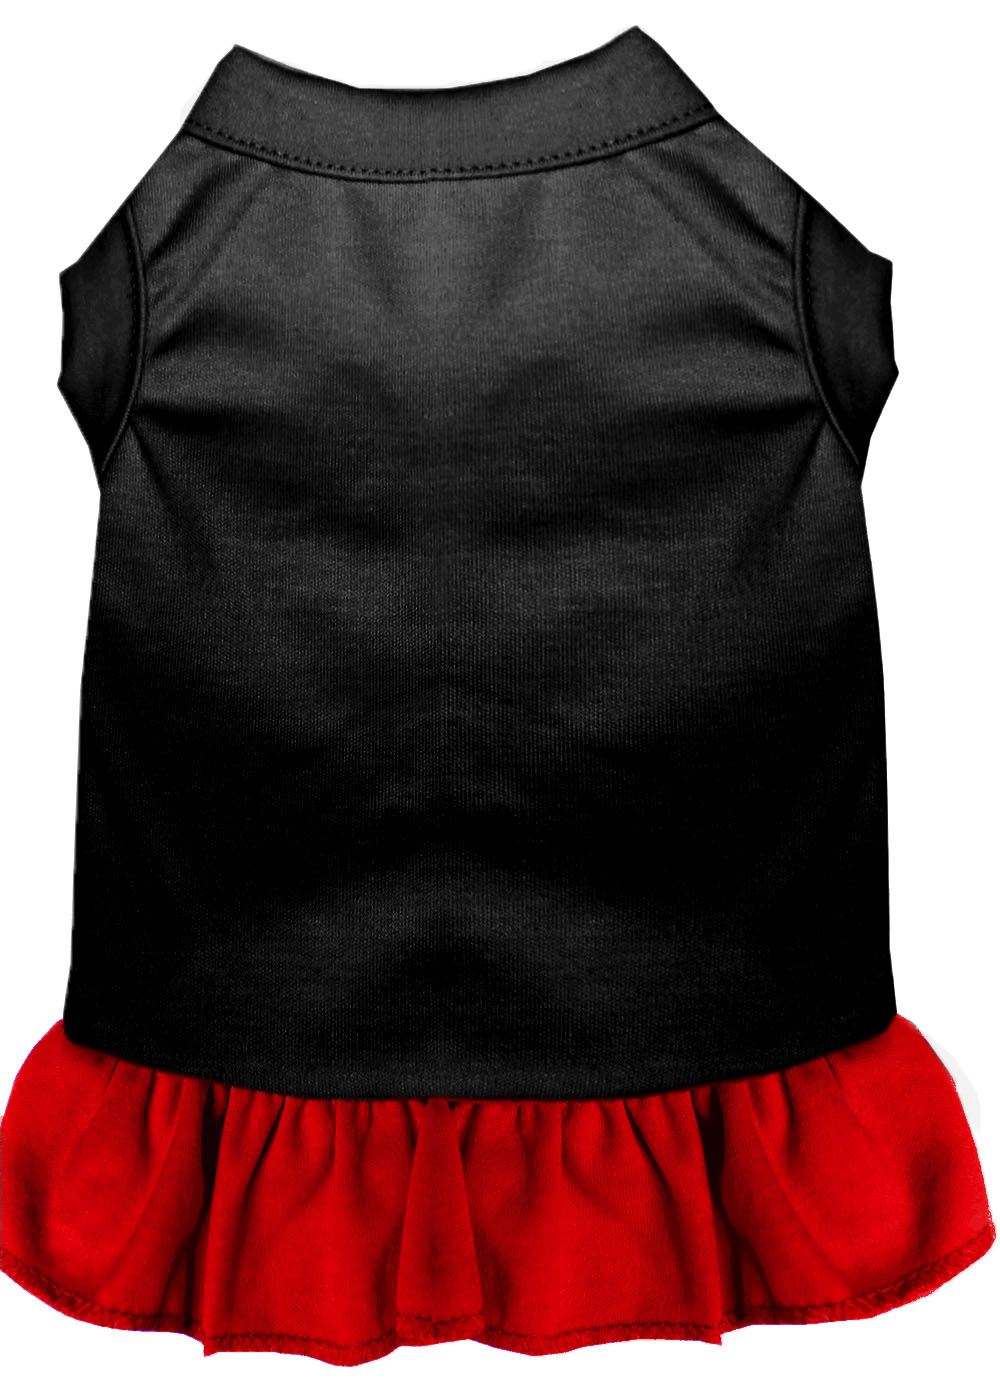 Plain Pet Dress Black with Red XXXL